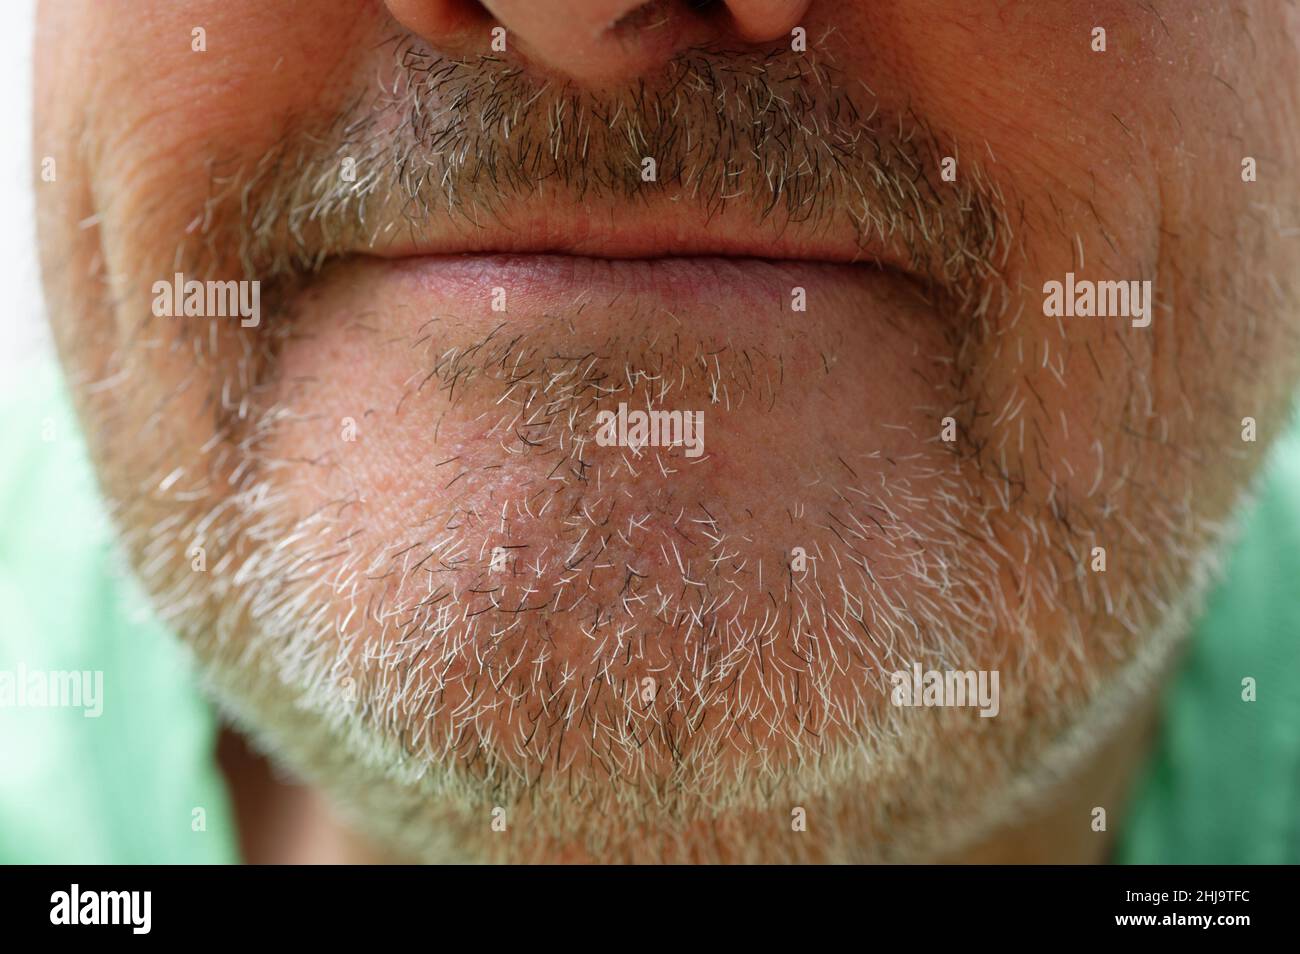 Un taglio del mento di un uomo che mostra la stoppia nera e grigia. Le labbra sono chiuse ma sorridendo leggermente. Le sue narici sono solo nella cornice. Foto Stock